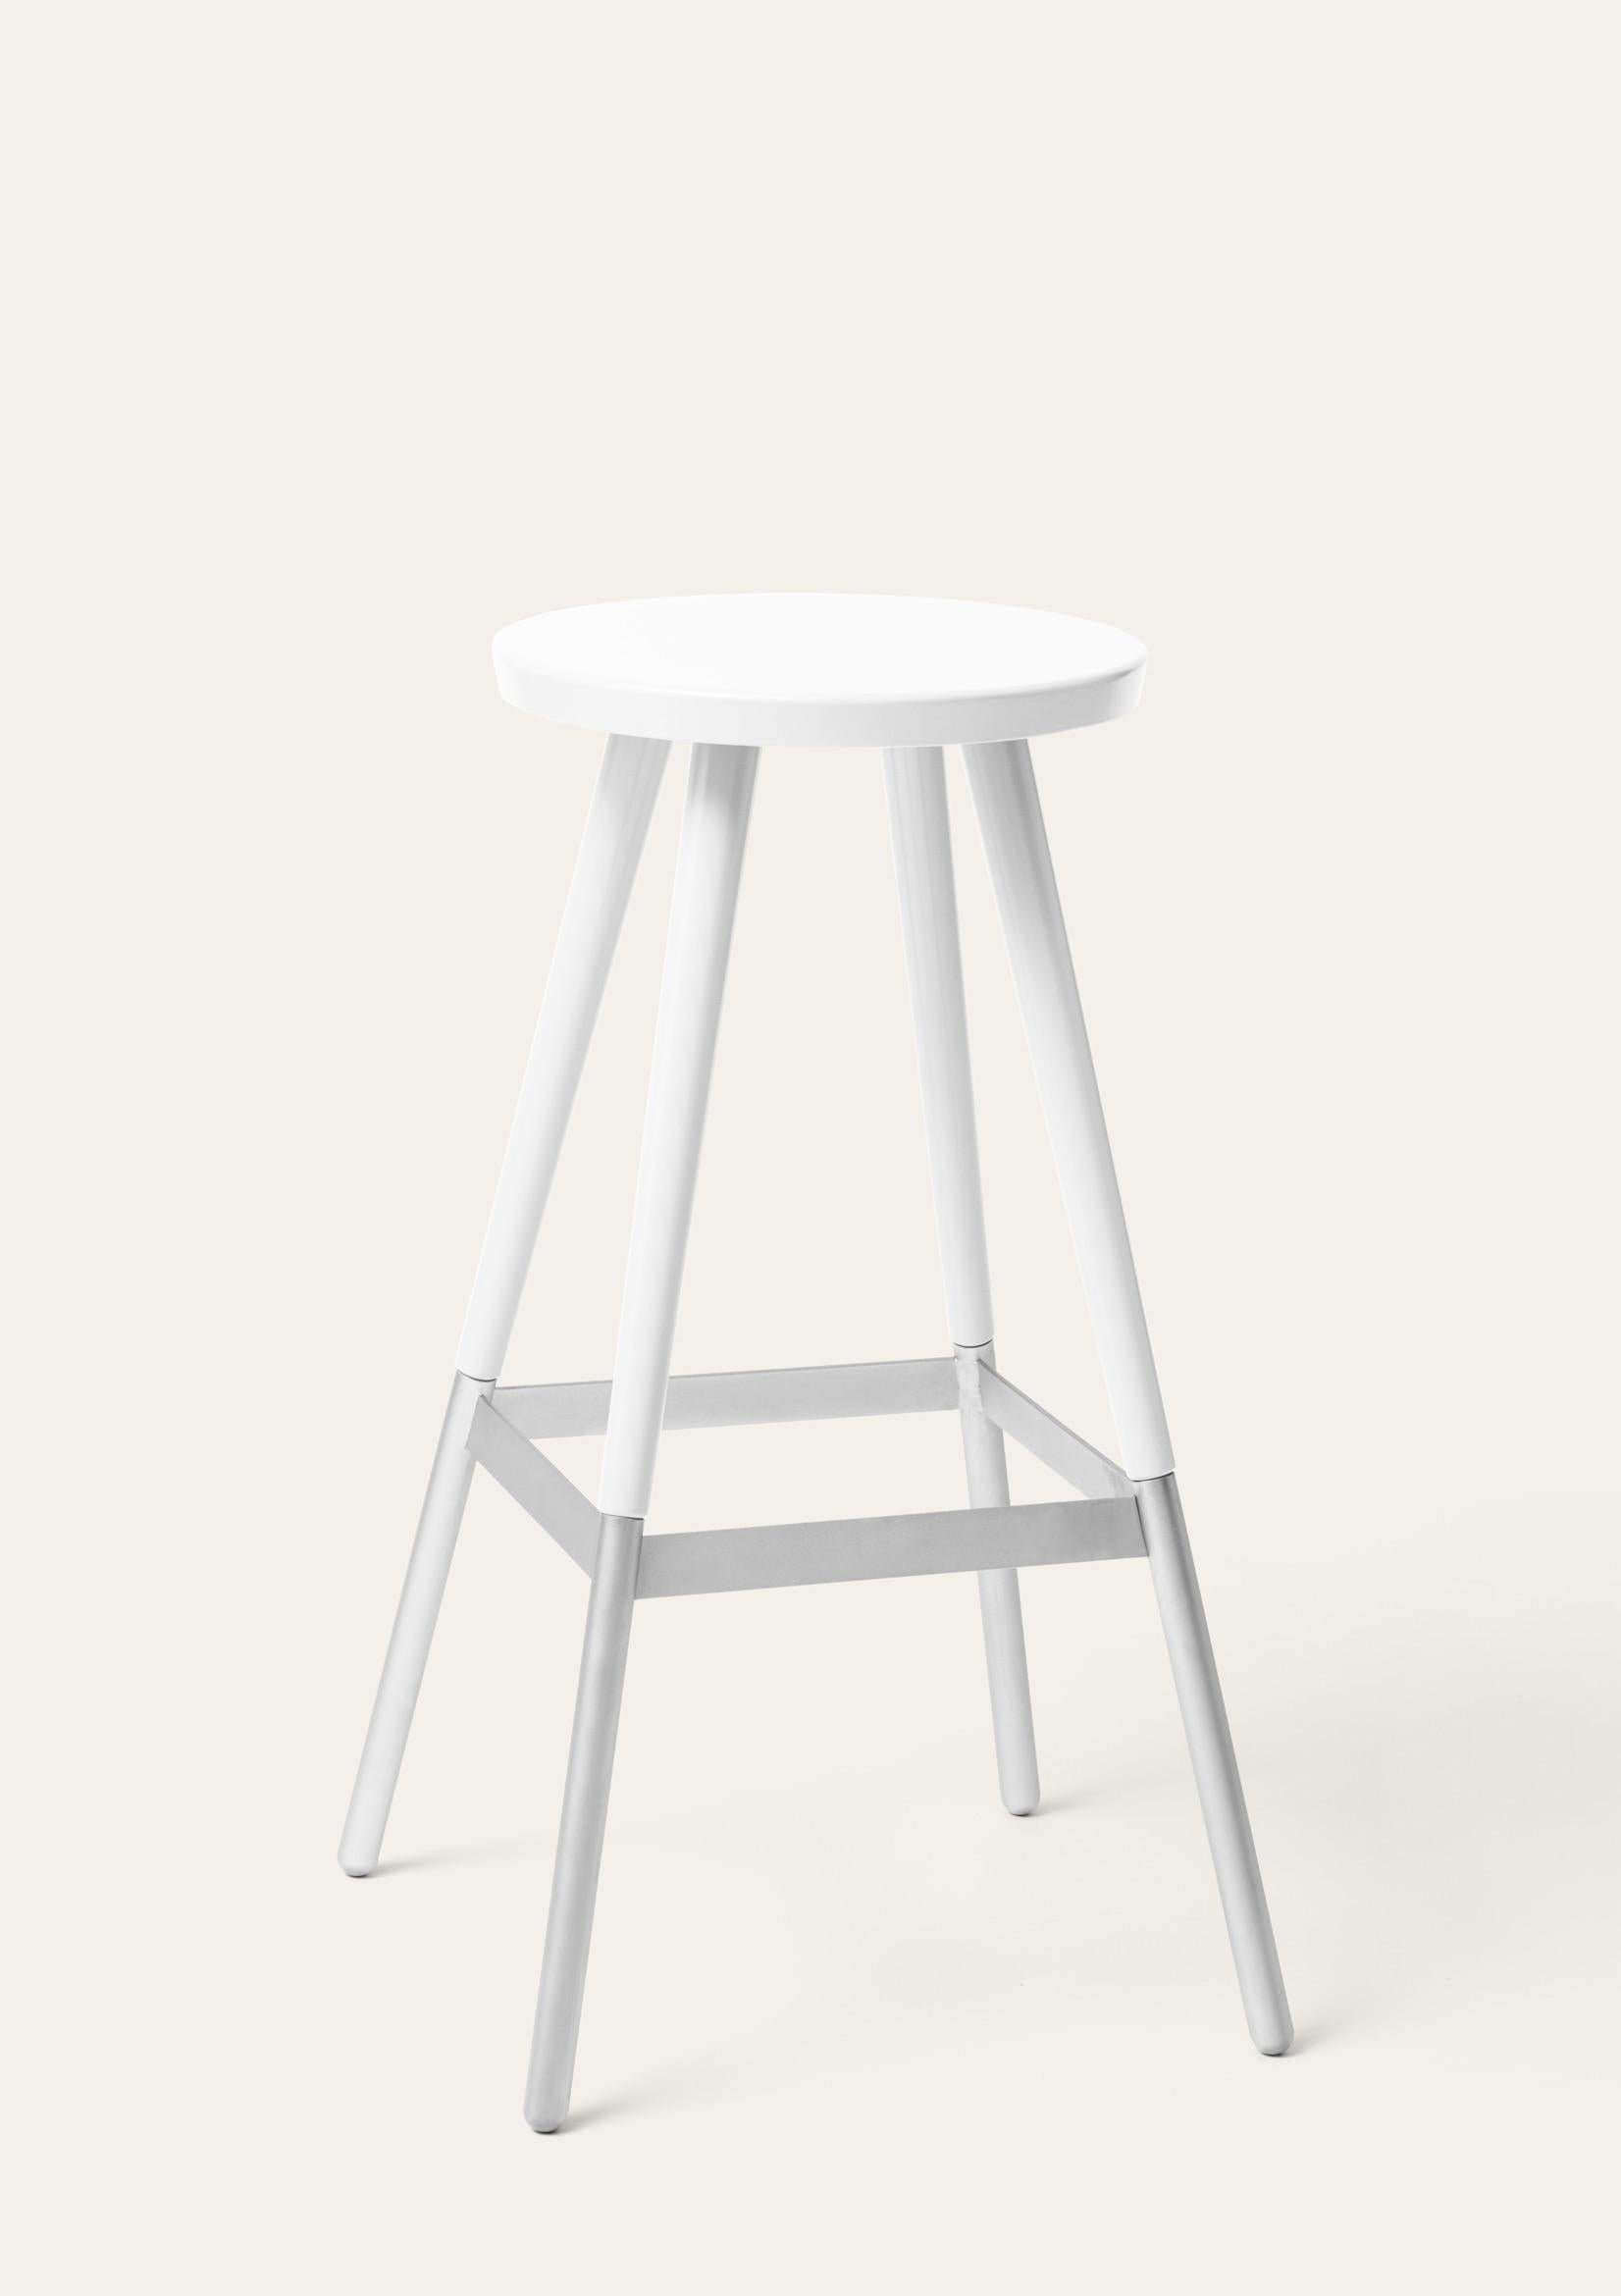 Grand tabouret blanc Tupp par Storängen Design/One
Dimensions : D 45 x L 45 x H 82 cm
Matériaux : bois de bouleau, acier nickelé.
Egalement disponible dans d'autres couleurs et avec dossier.

Donnez du caractère au bar ! Tupp est disponible en deux